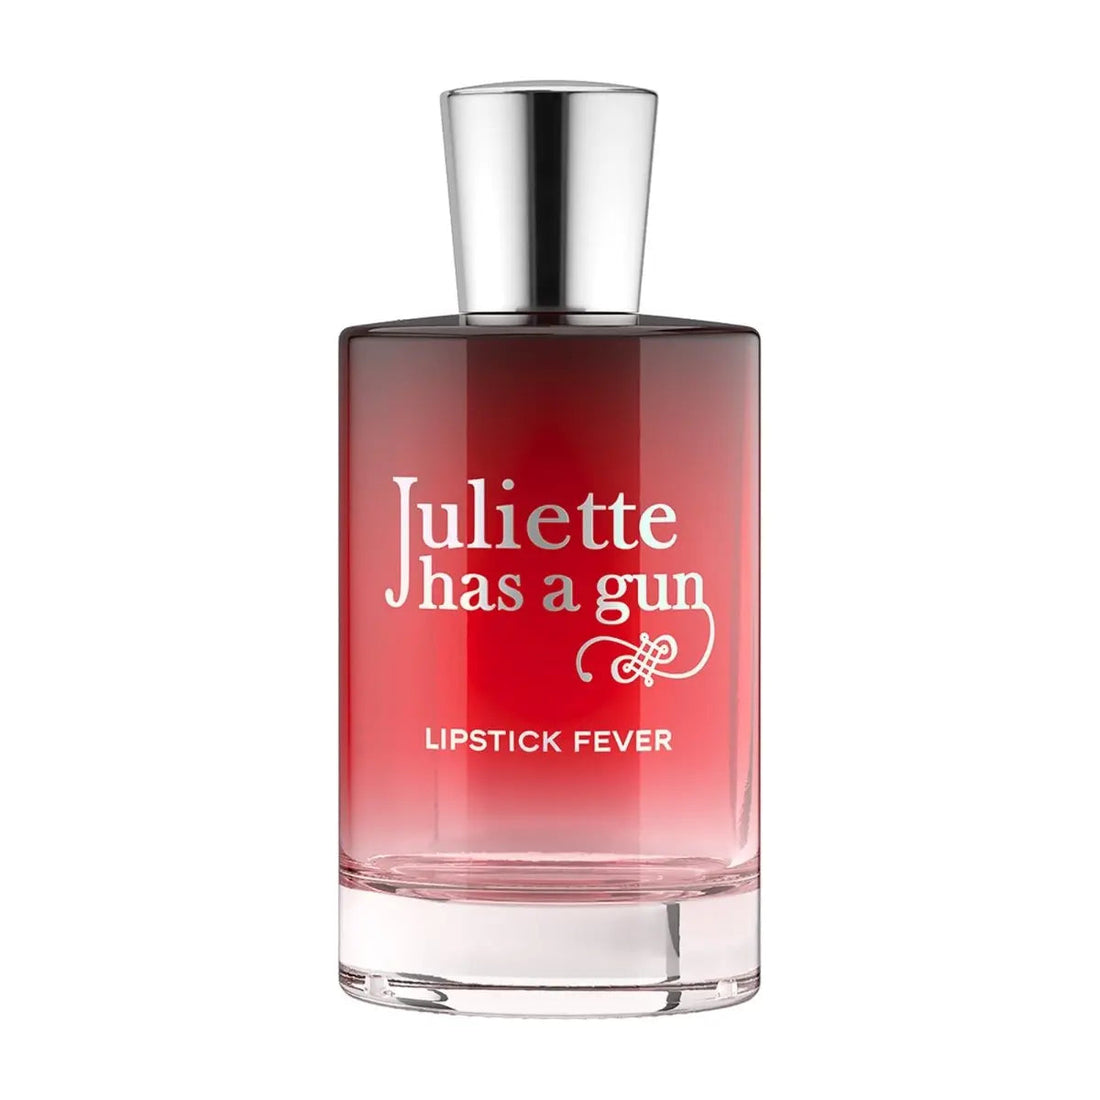 Juliette has a Gun Lipstick Fever Eau de Parfum 50 ml